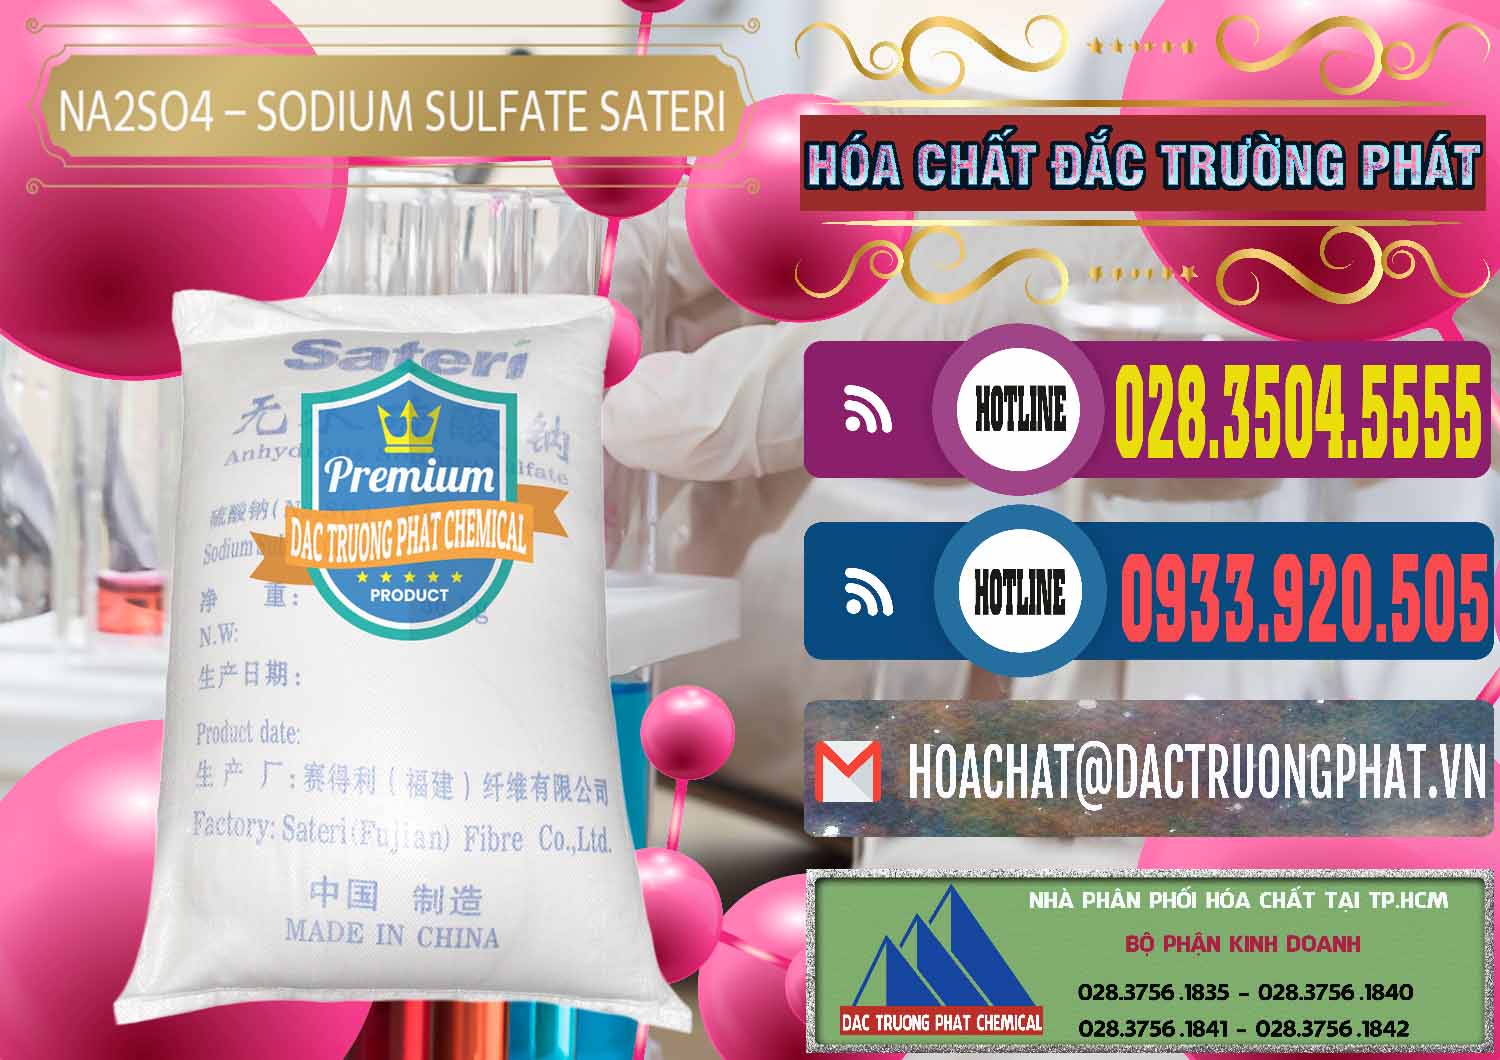 Nơi chuyên bán và cung cấp Sodium Sulphate - Muối Sunfat Na2SO4 Sateri Trung Quốc China - 0100 - Công ty bán & phân phối hóa chất tại TP.HCM - muabanhoachat.com.vn